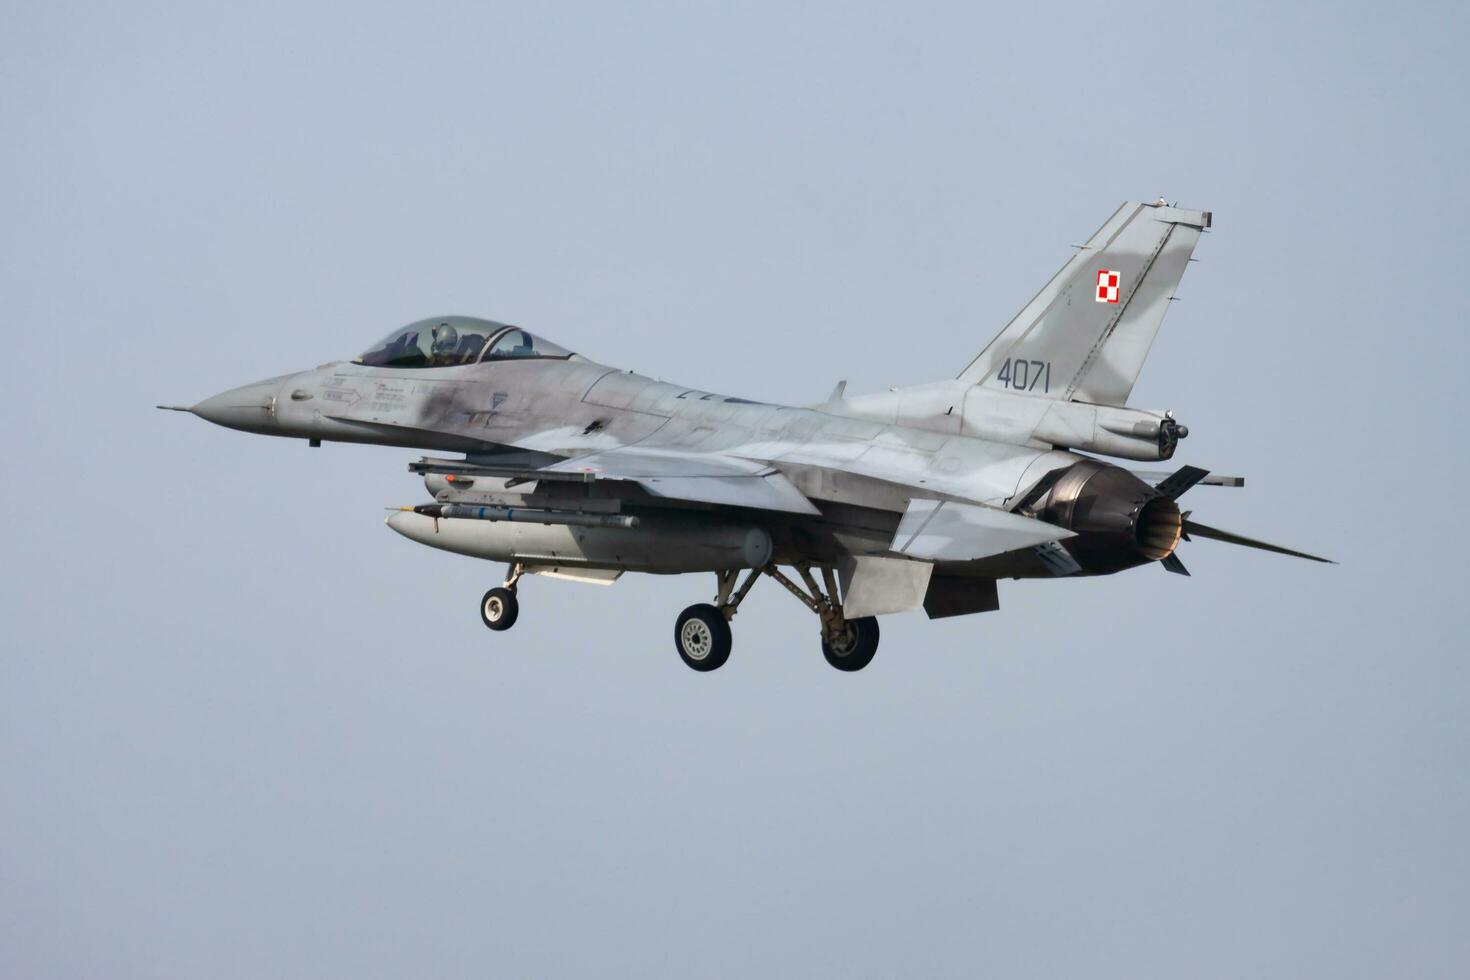 polaco aire fuerza bloqueo martín f-16c luchando halcón 4071 combatiente chorro llegada y aterrizaje a Leeuwarden aire base para frisio bandera 2015 aire ejercicio foto